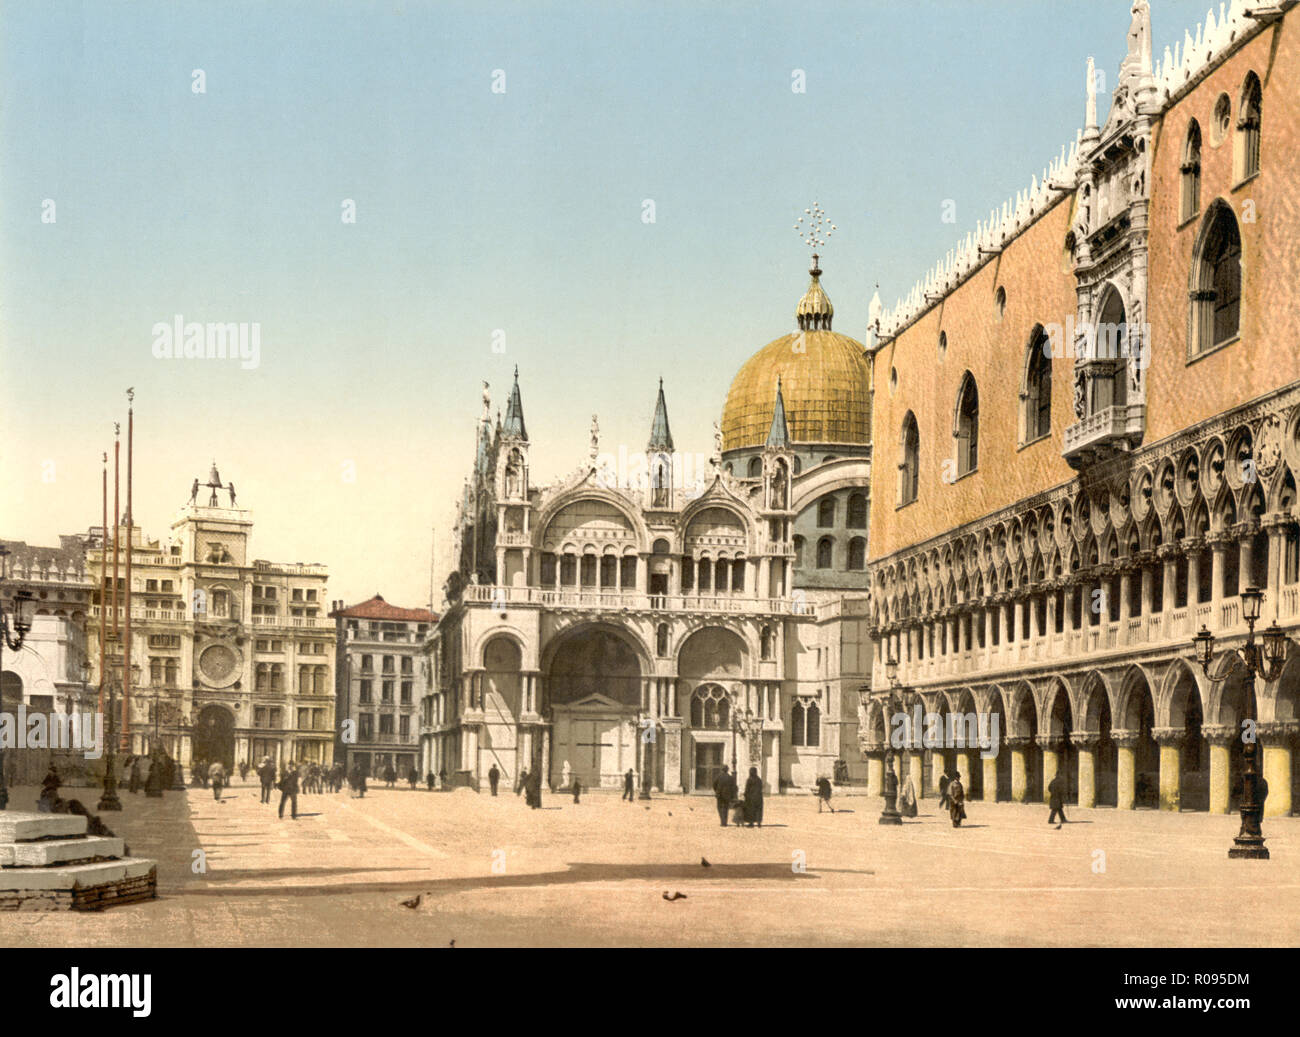 Clock Tower, Basilica di San Marco e il Palazzo dei Dogi, la Piazzetta di San Marco, Venezia, Italia, Photochrome Stampa, Detroit Publishing Company, 1900 Foto Stock